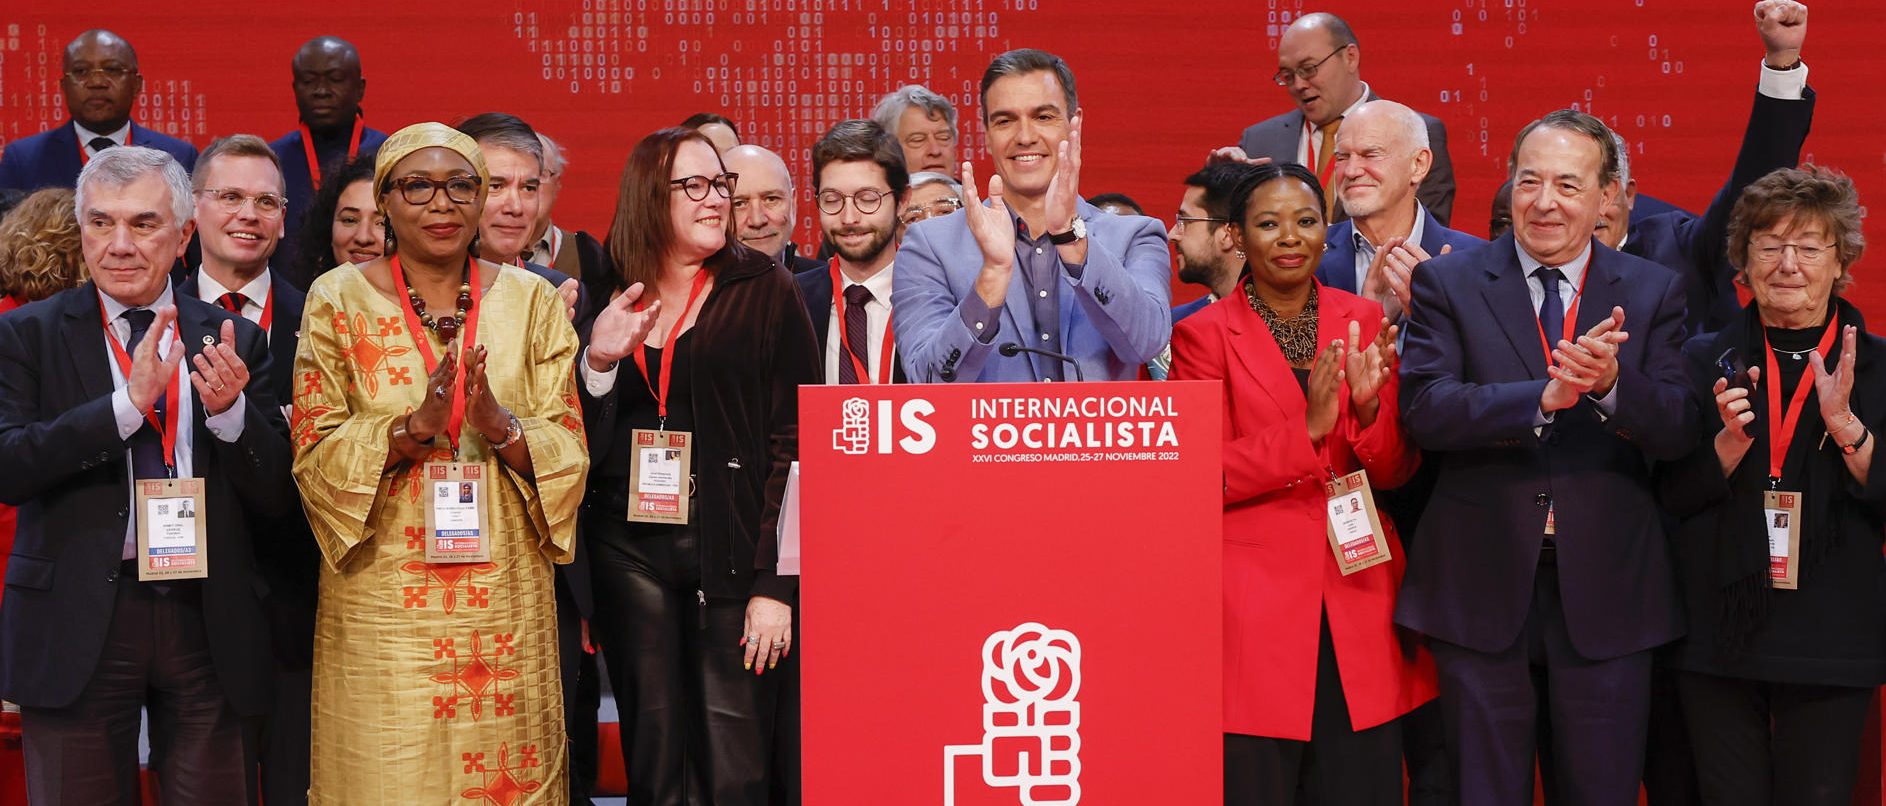 Pedro Sánchez en la clausura del congreso de la Internacional Socialista